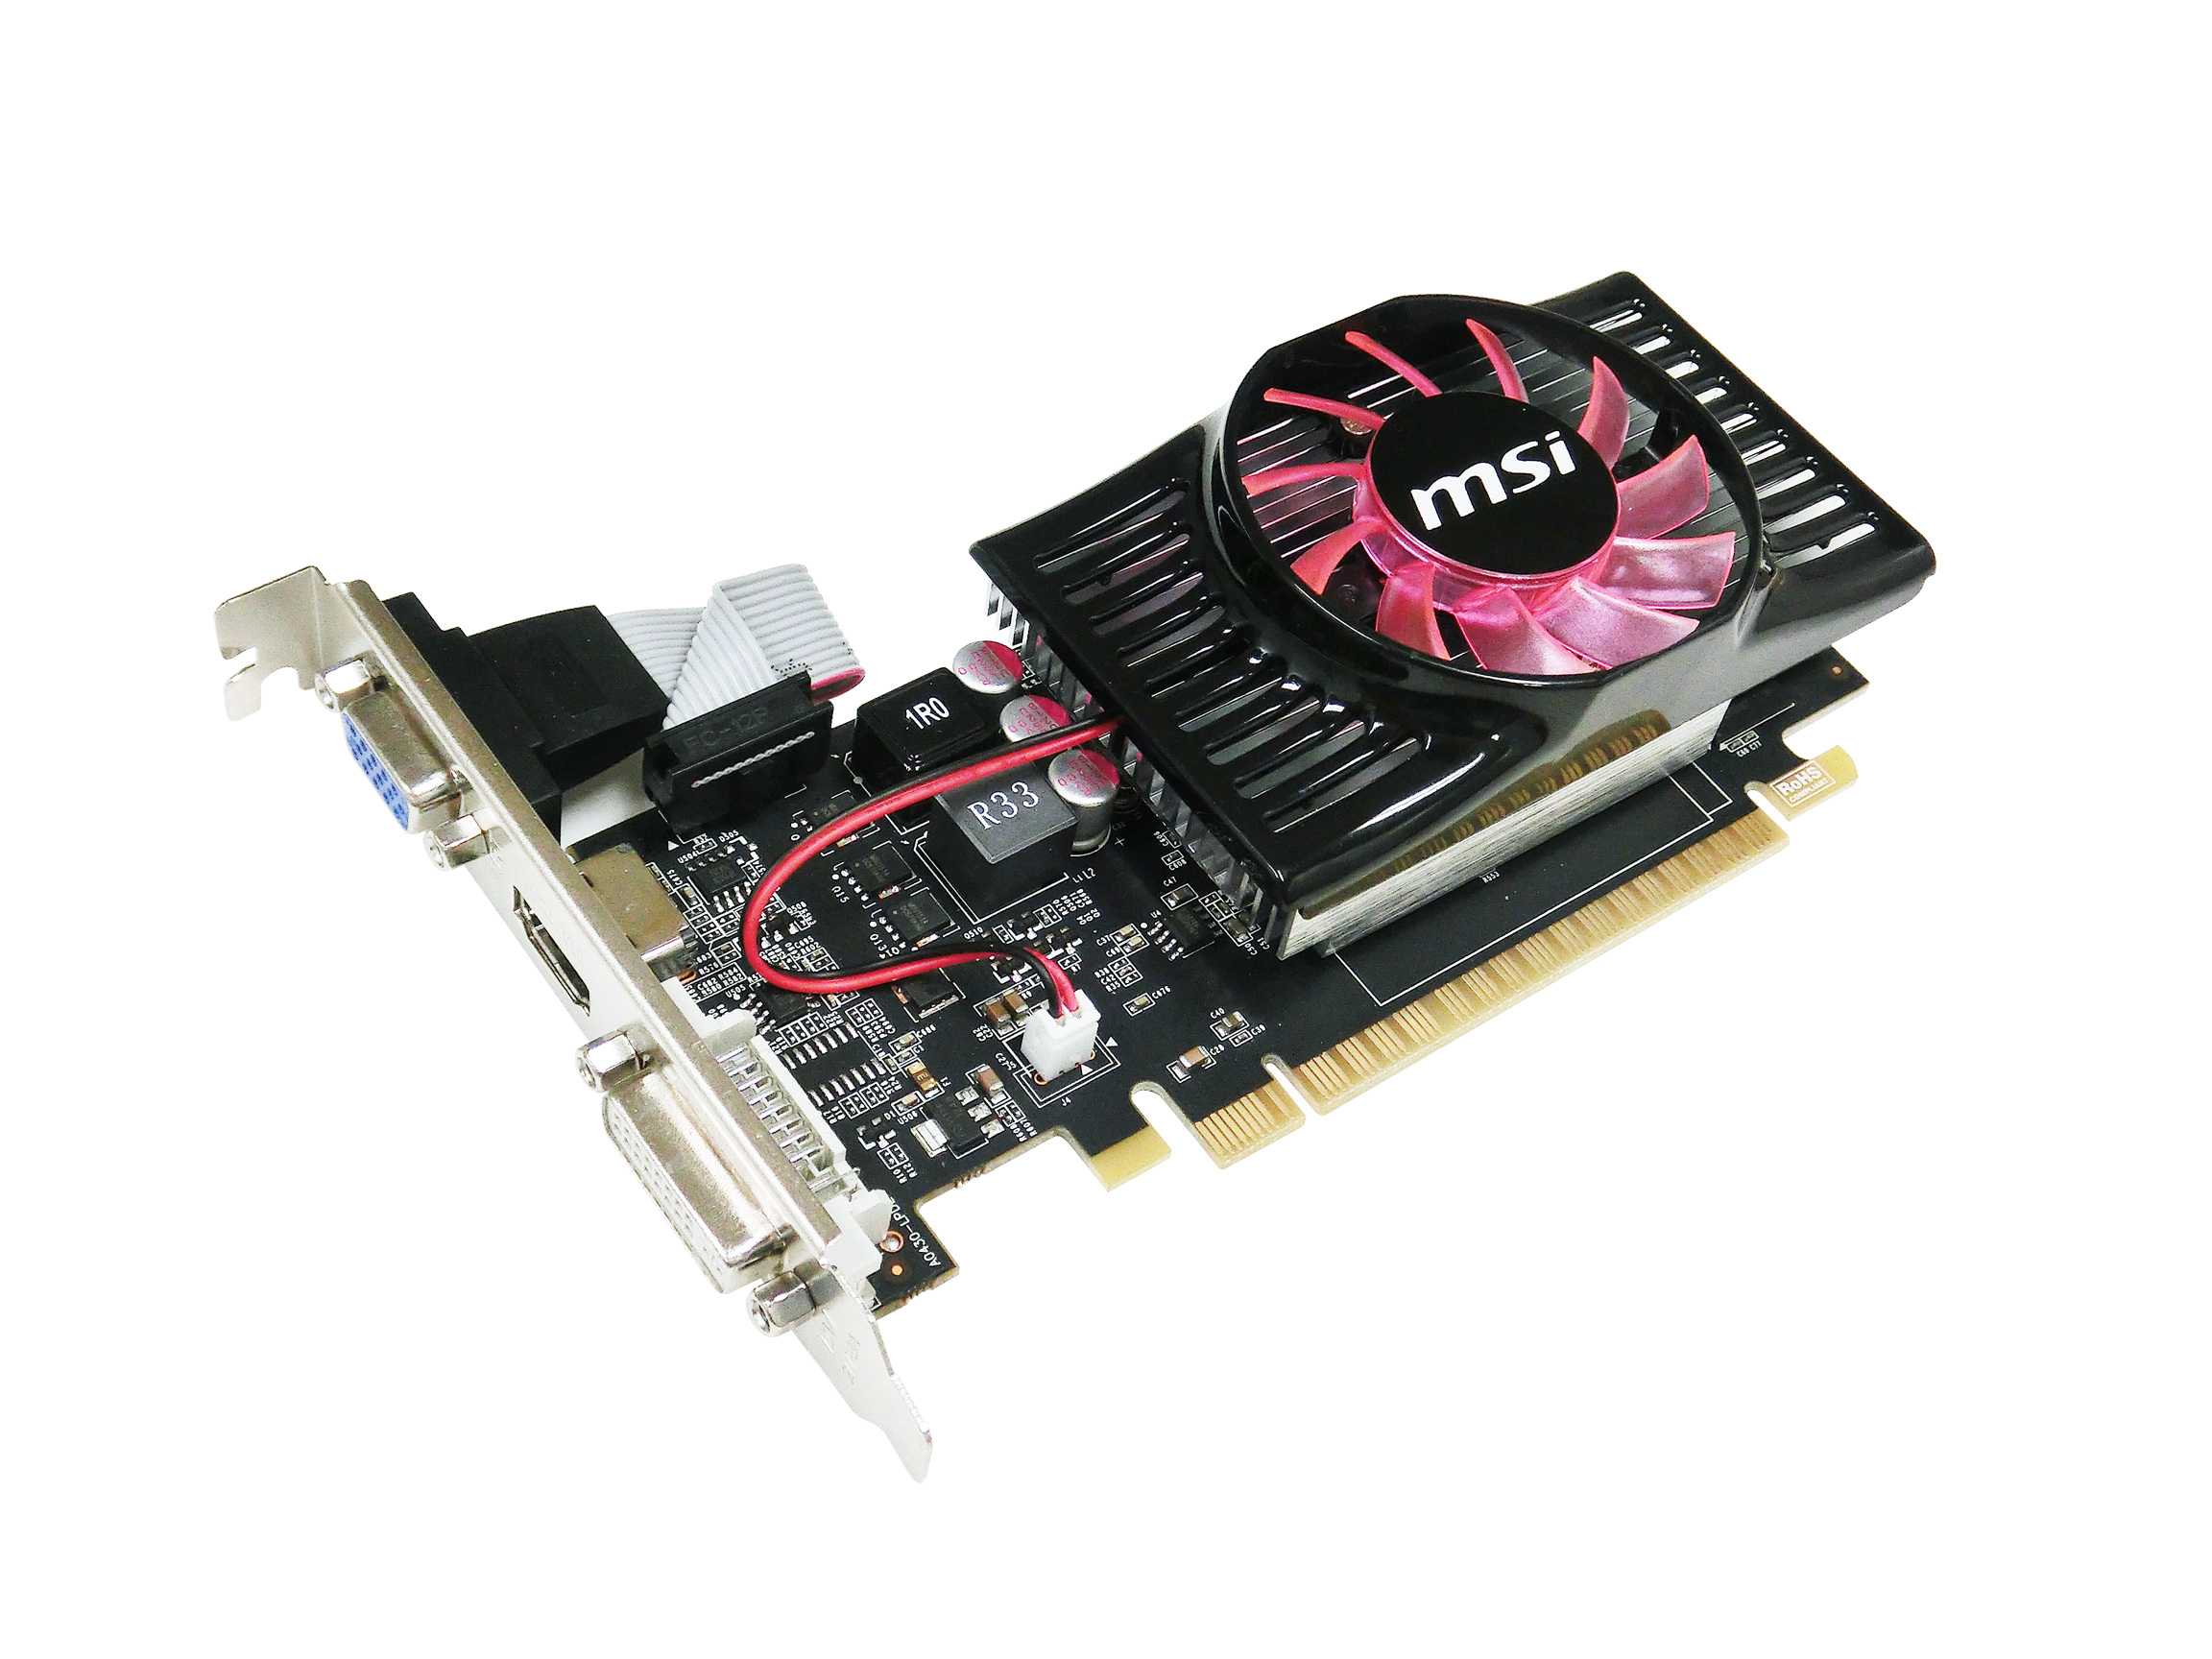 Immagine pubblicata in relazione al seguente contenuto: MSI commercializza la video card GeForce GT 630 low-profile | Nome immagine: news19651_MSI-GeForce-GT-630-low-profile_1.jpg